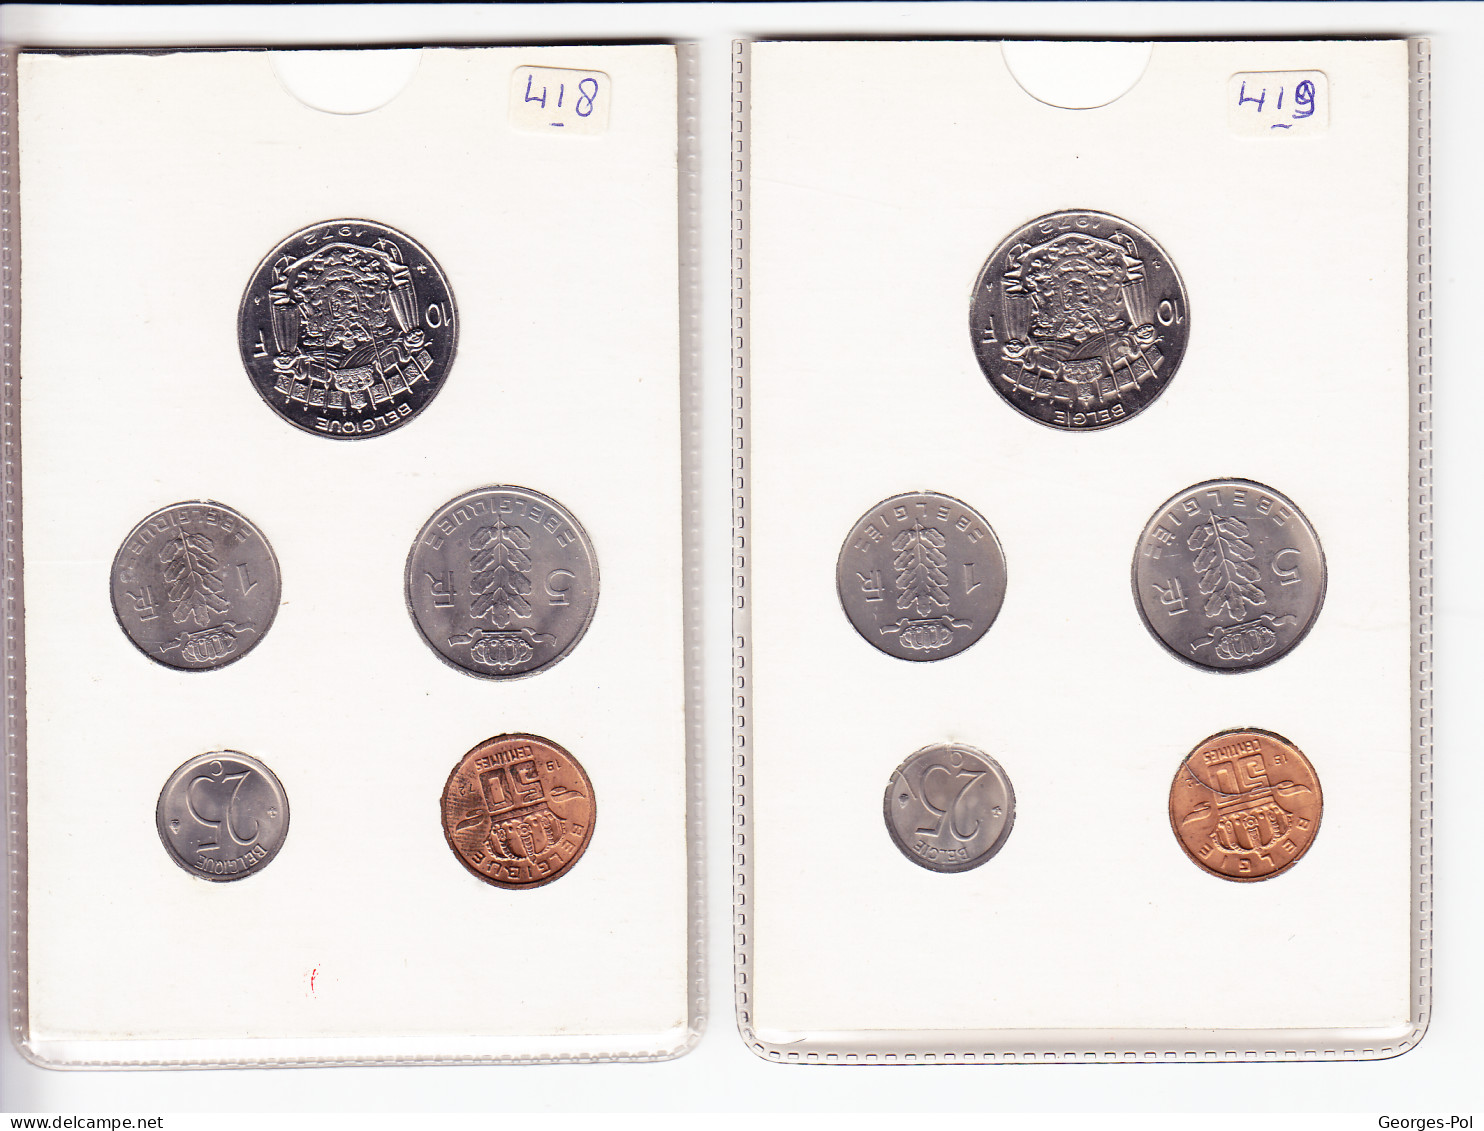 Monnaie Royale De Belgique 1972 Koninklijke Munt Van België. 2 Cartes De 5 Pièces Non Circulées - FDEC, BU, BE & Münzkassetten